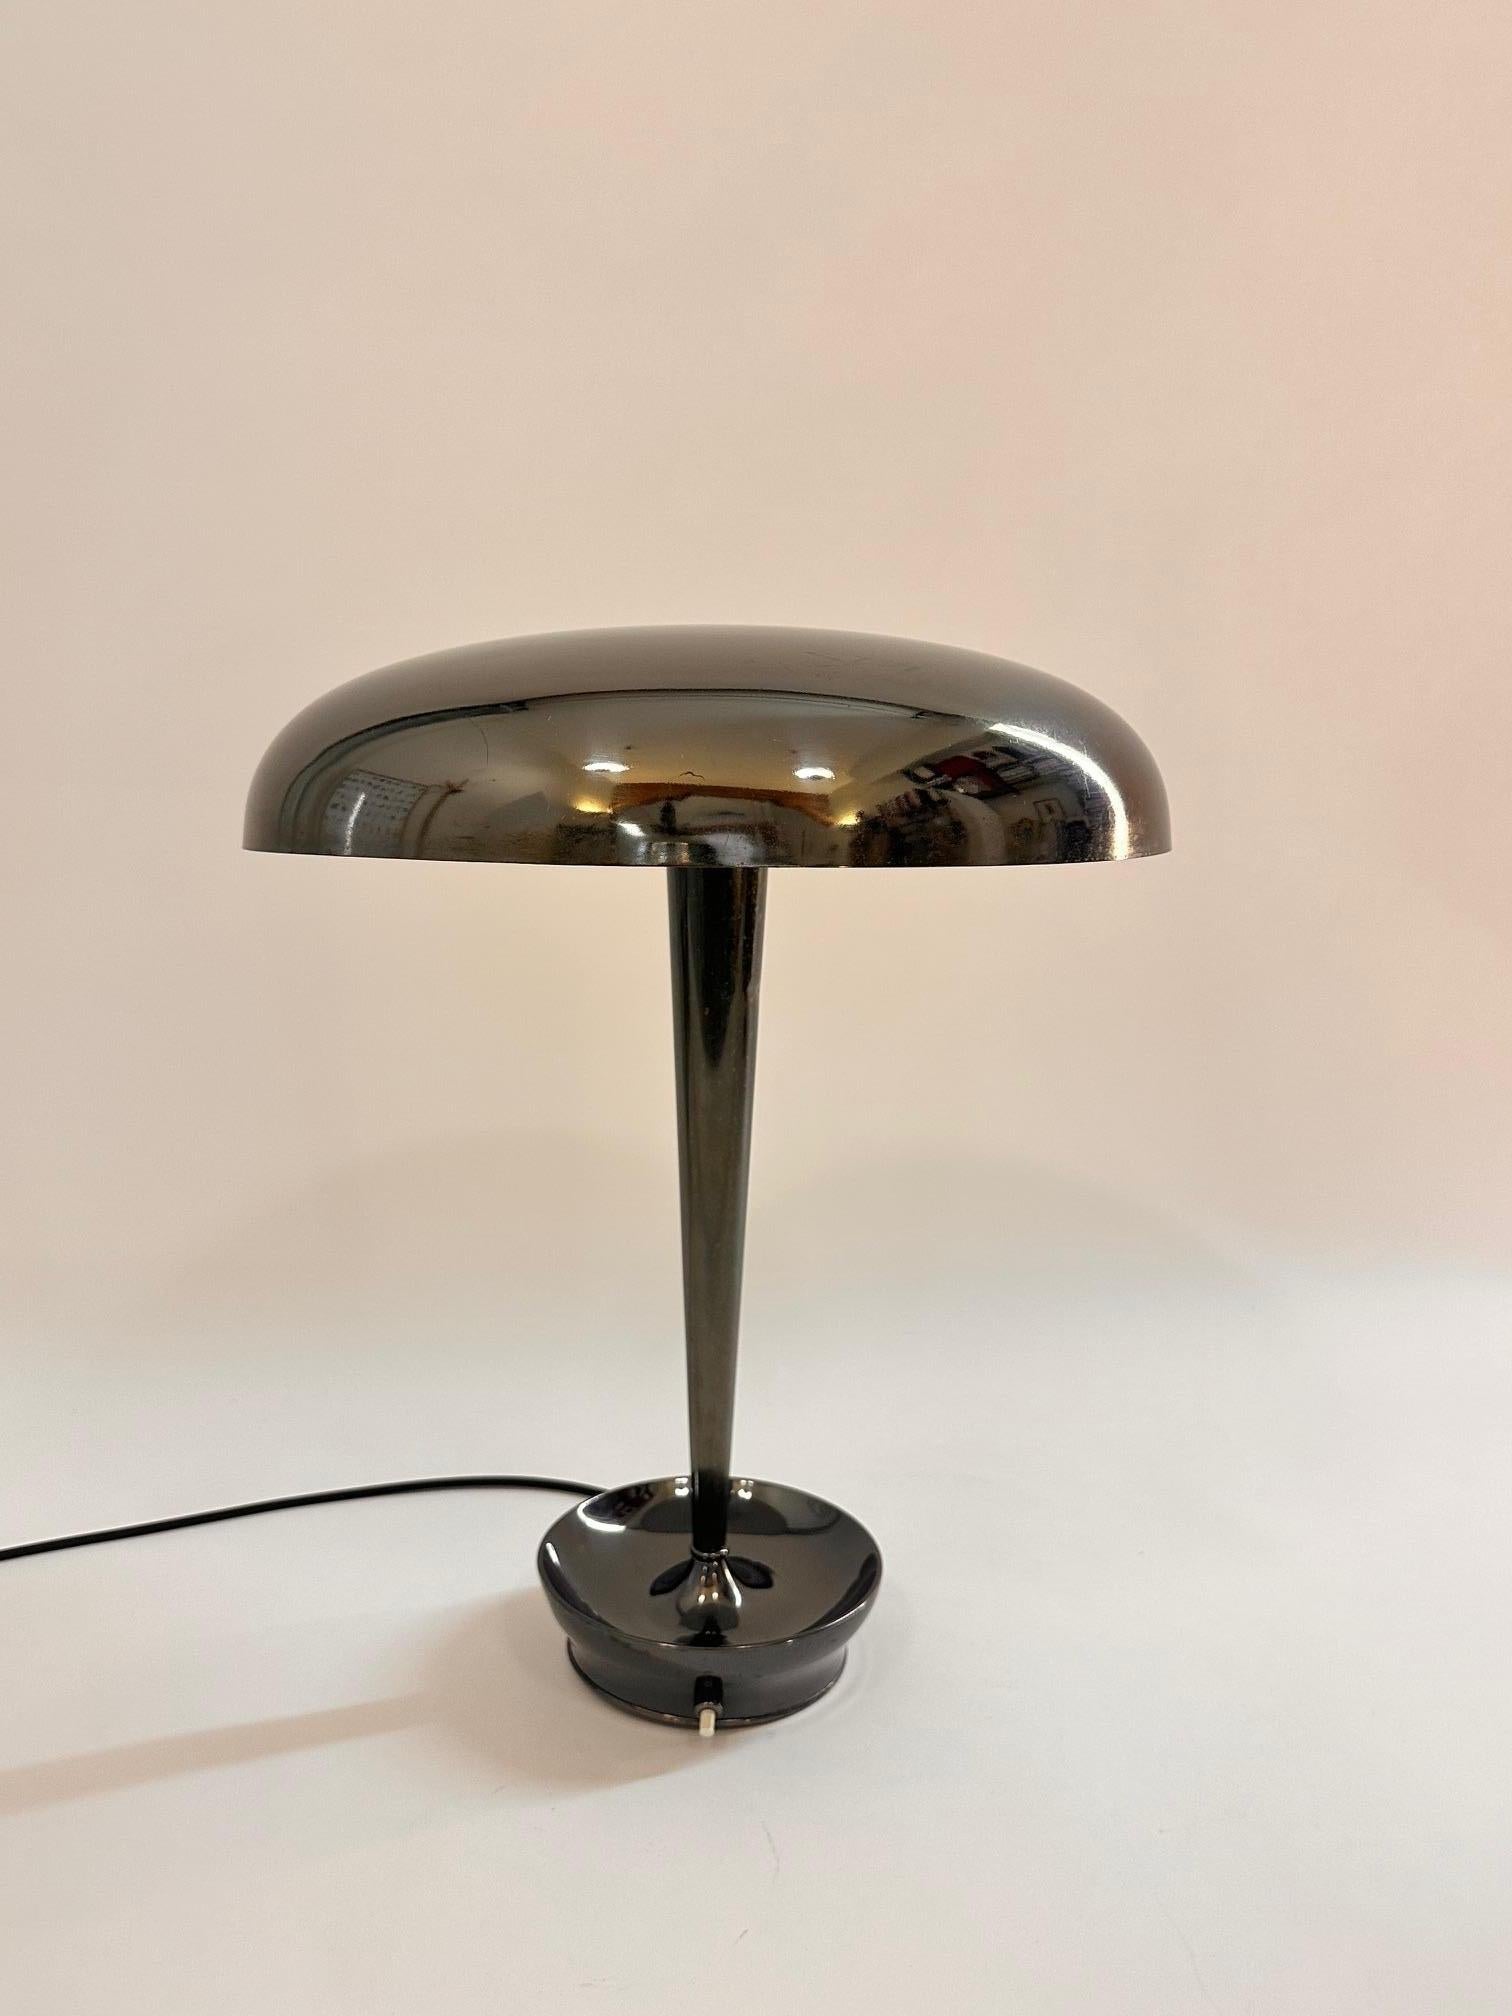 Lampe de bureau d'origine Stilnovo, modèle D. 4639, en bronze patiné noir, en très bon état. Emballage et expédition gratuits.
Littérature : 